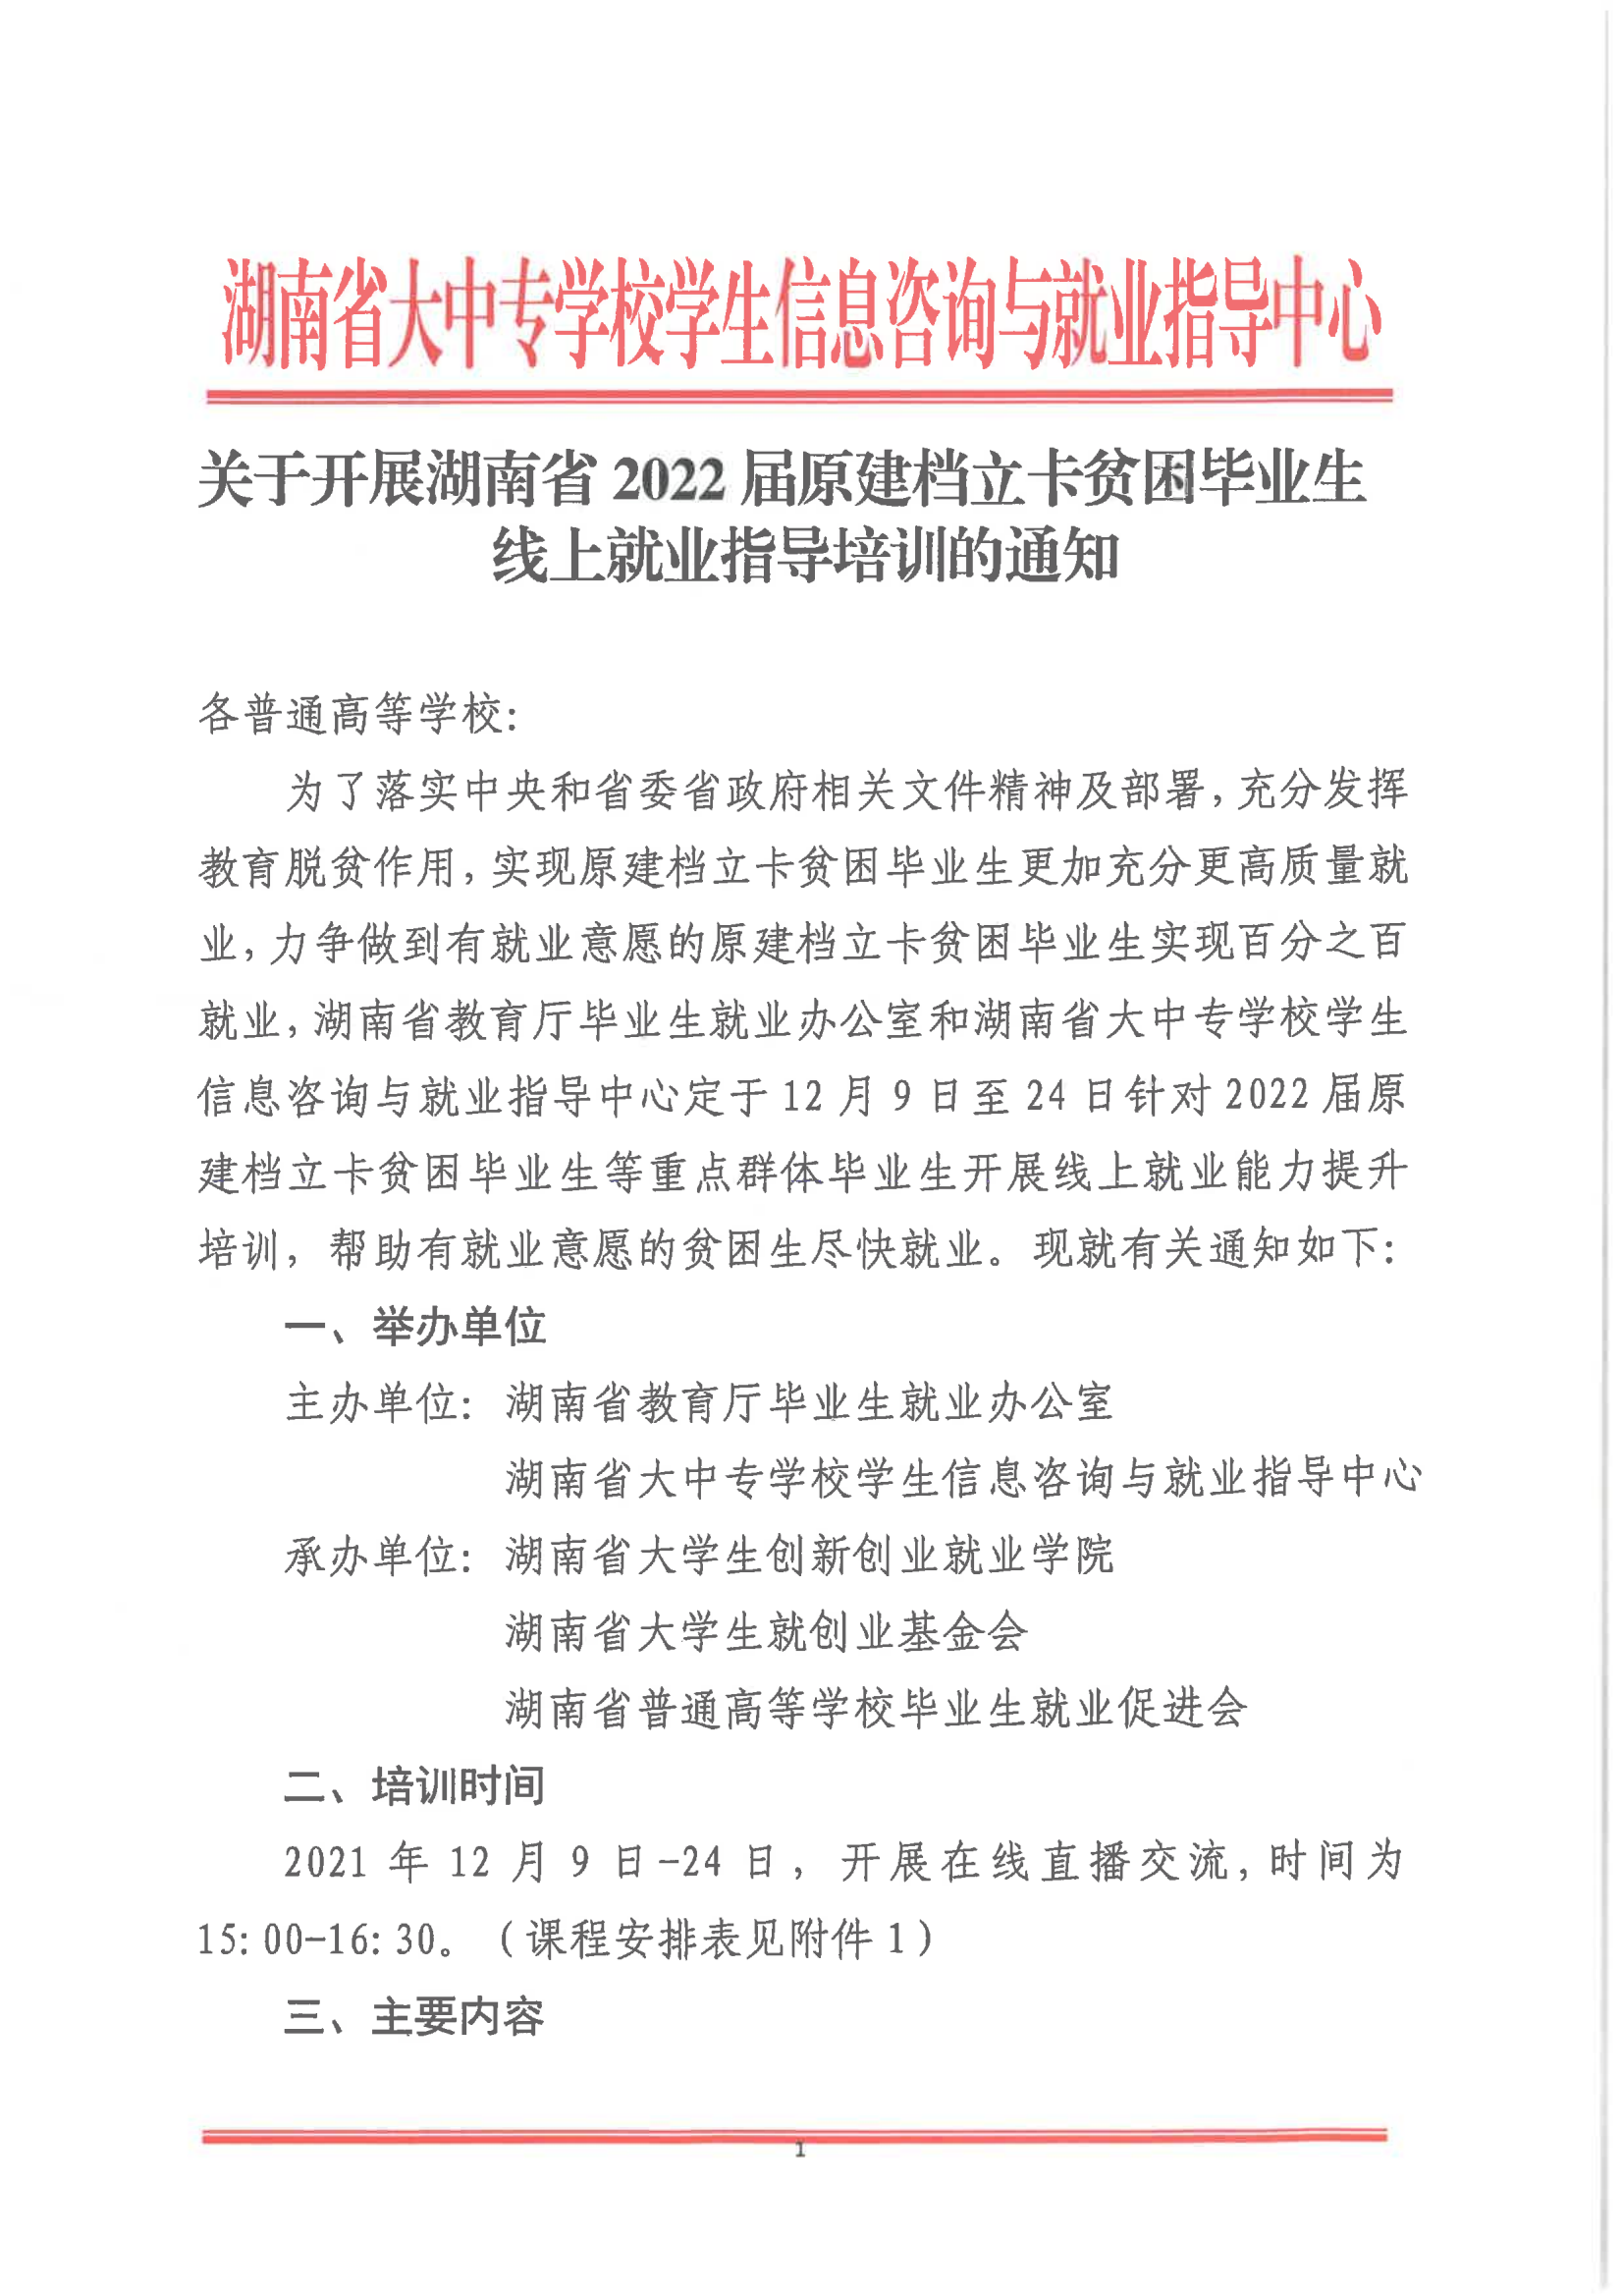 关于开展湖南省2022届原建档立卡毕业生线上就业指导培训的通知_00.png